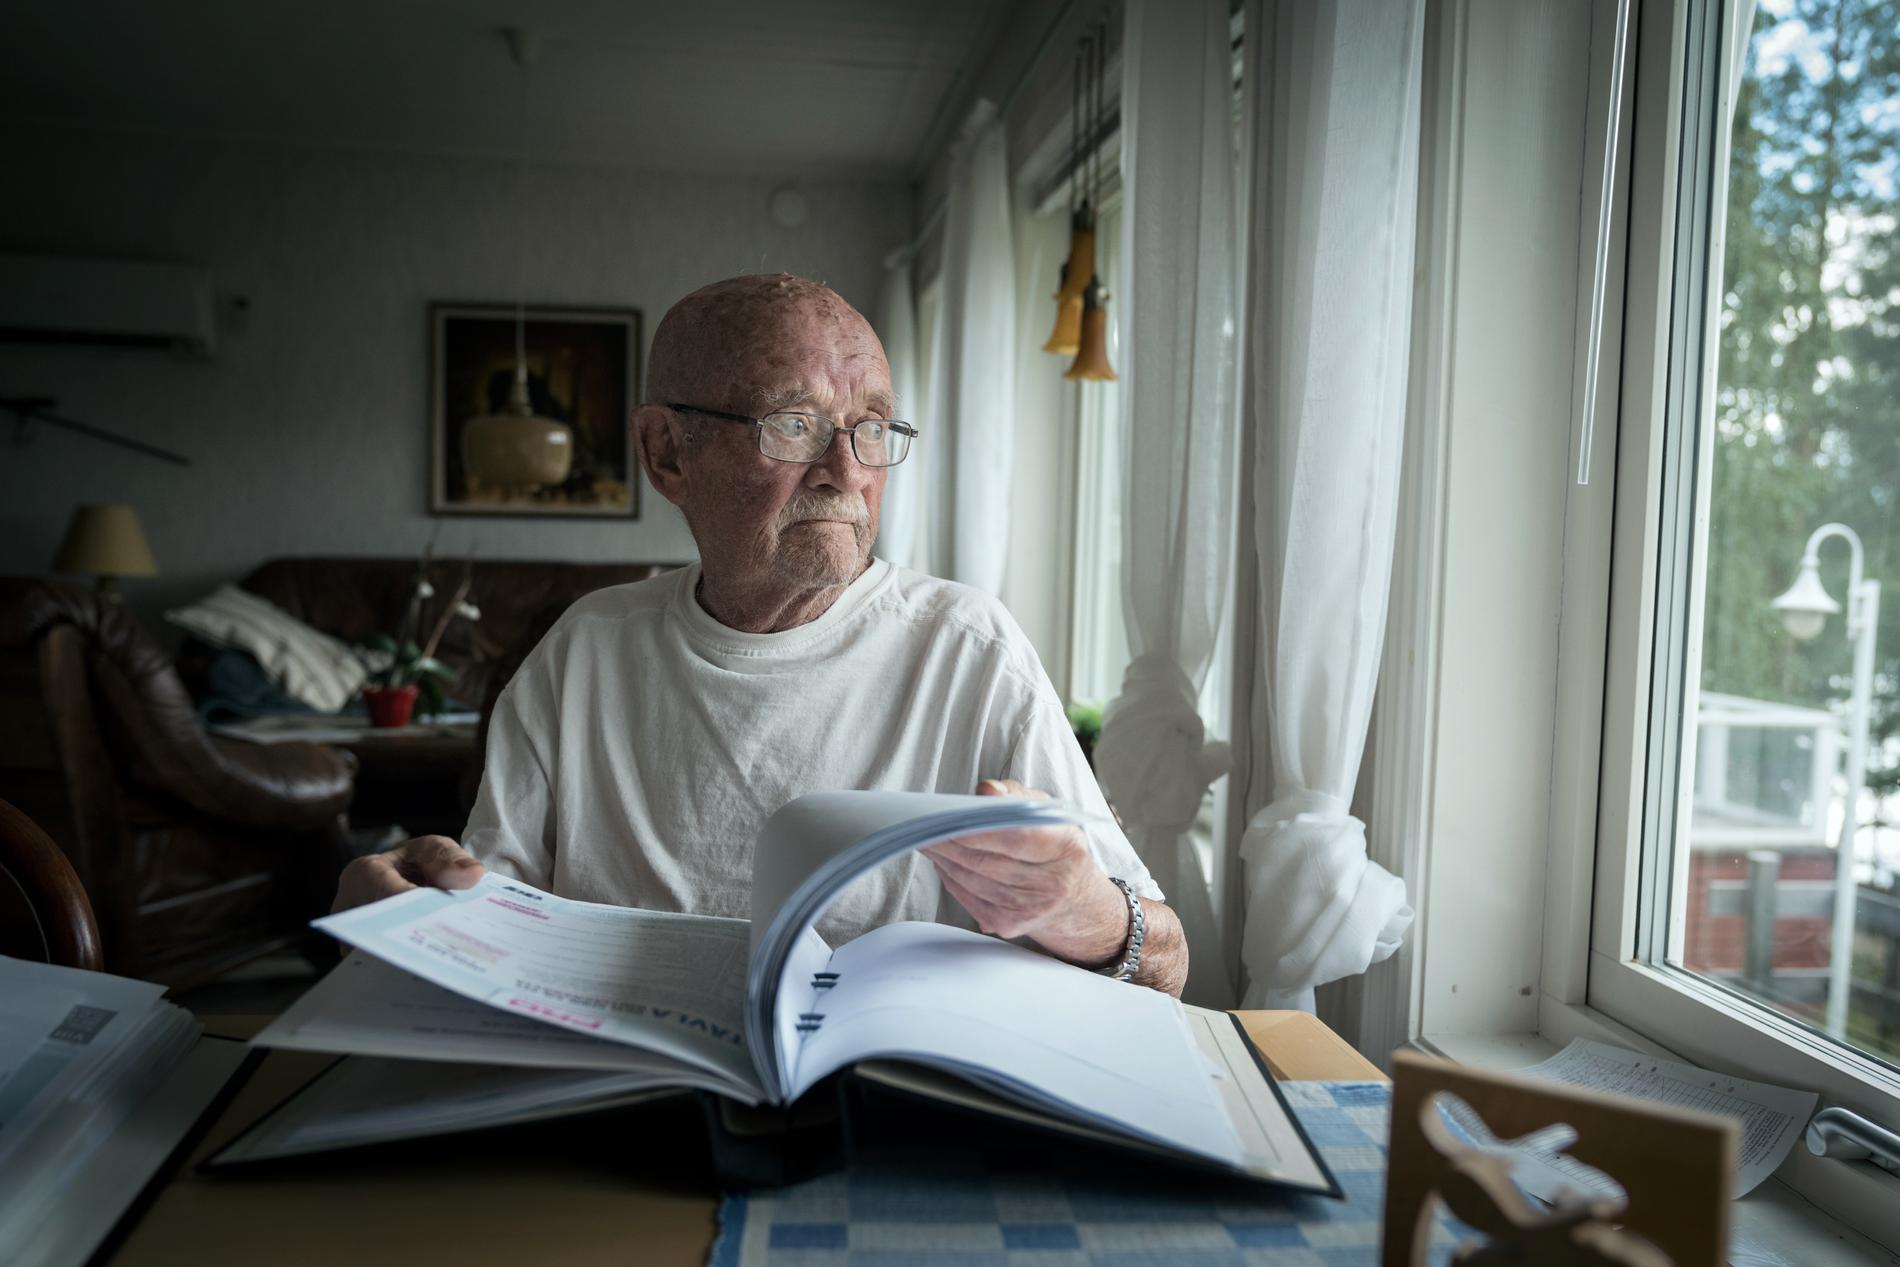 ”Jag sade några fula ord när jag fick den”, säger Sölve Roos, 82, om en tidigare elräkning på 5 425 kronor.